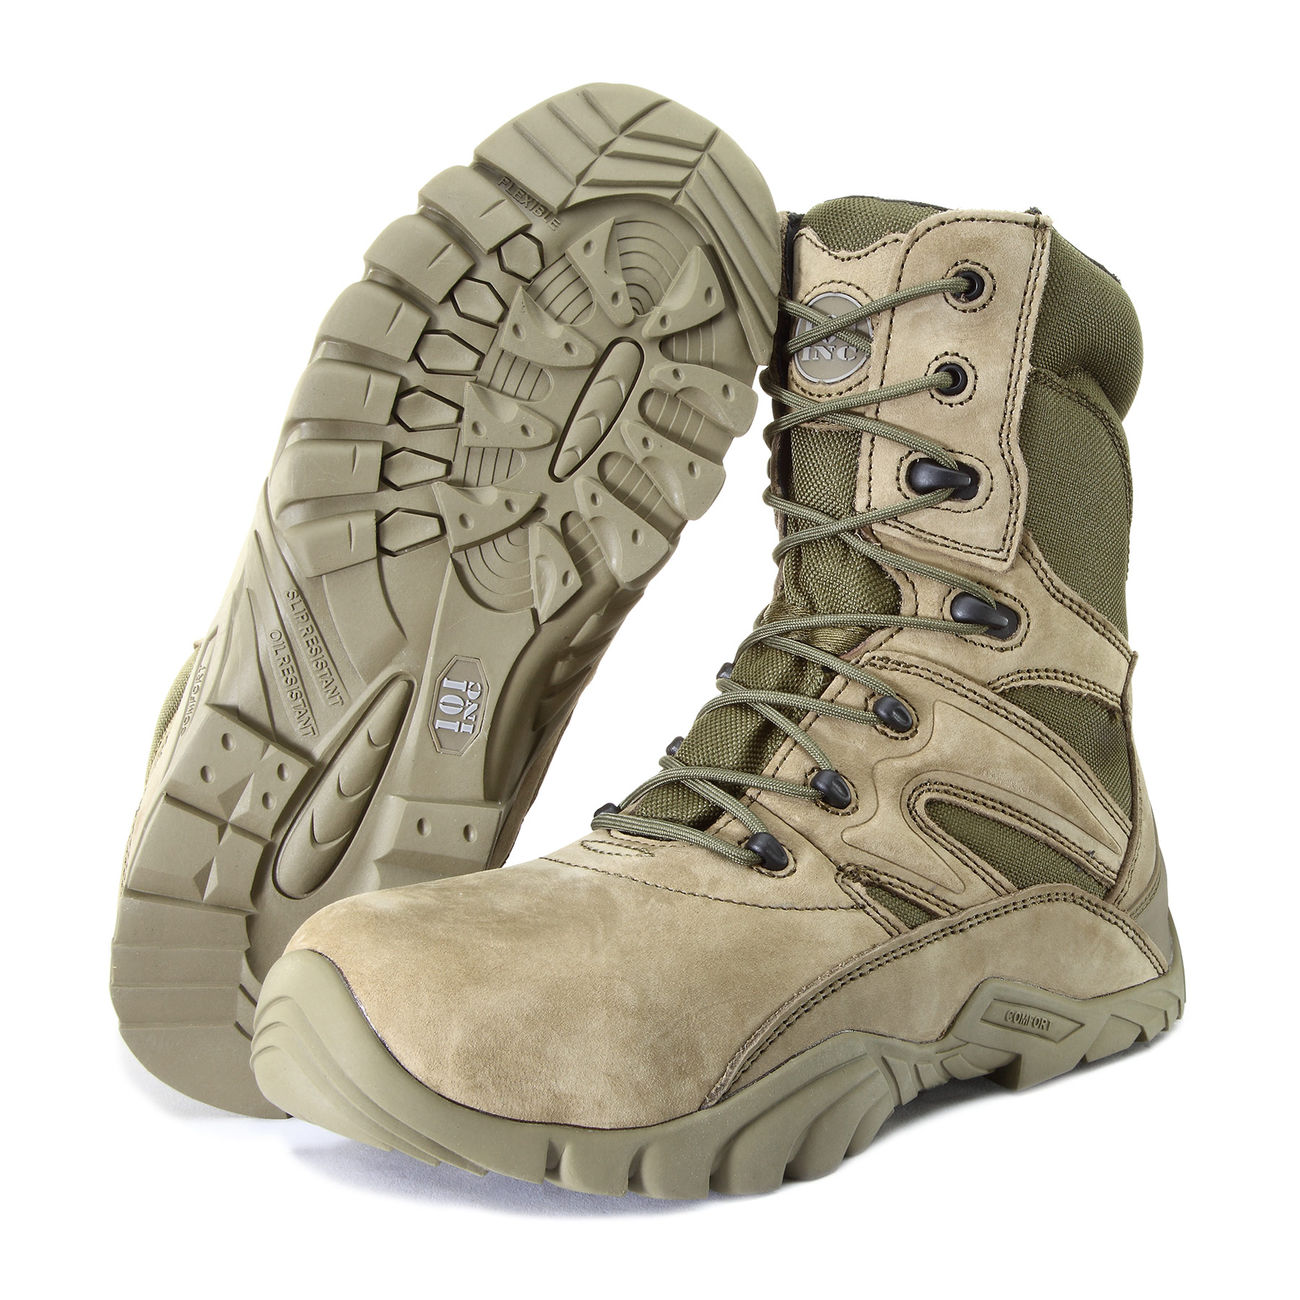 101 INC. Stiefel Tactical Boots Recon grün Bild 1